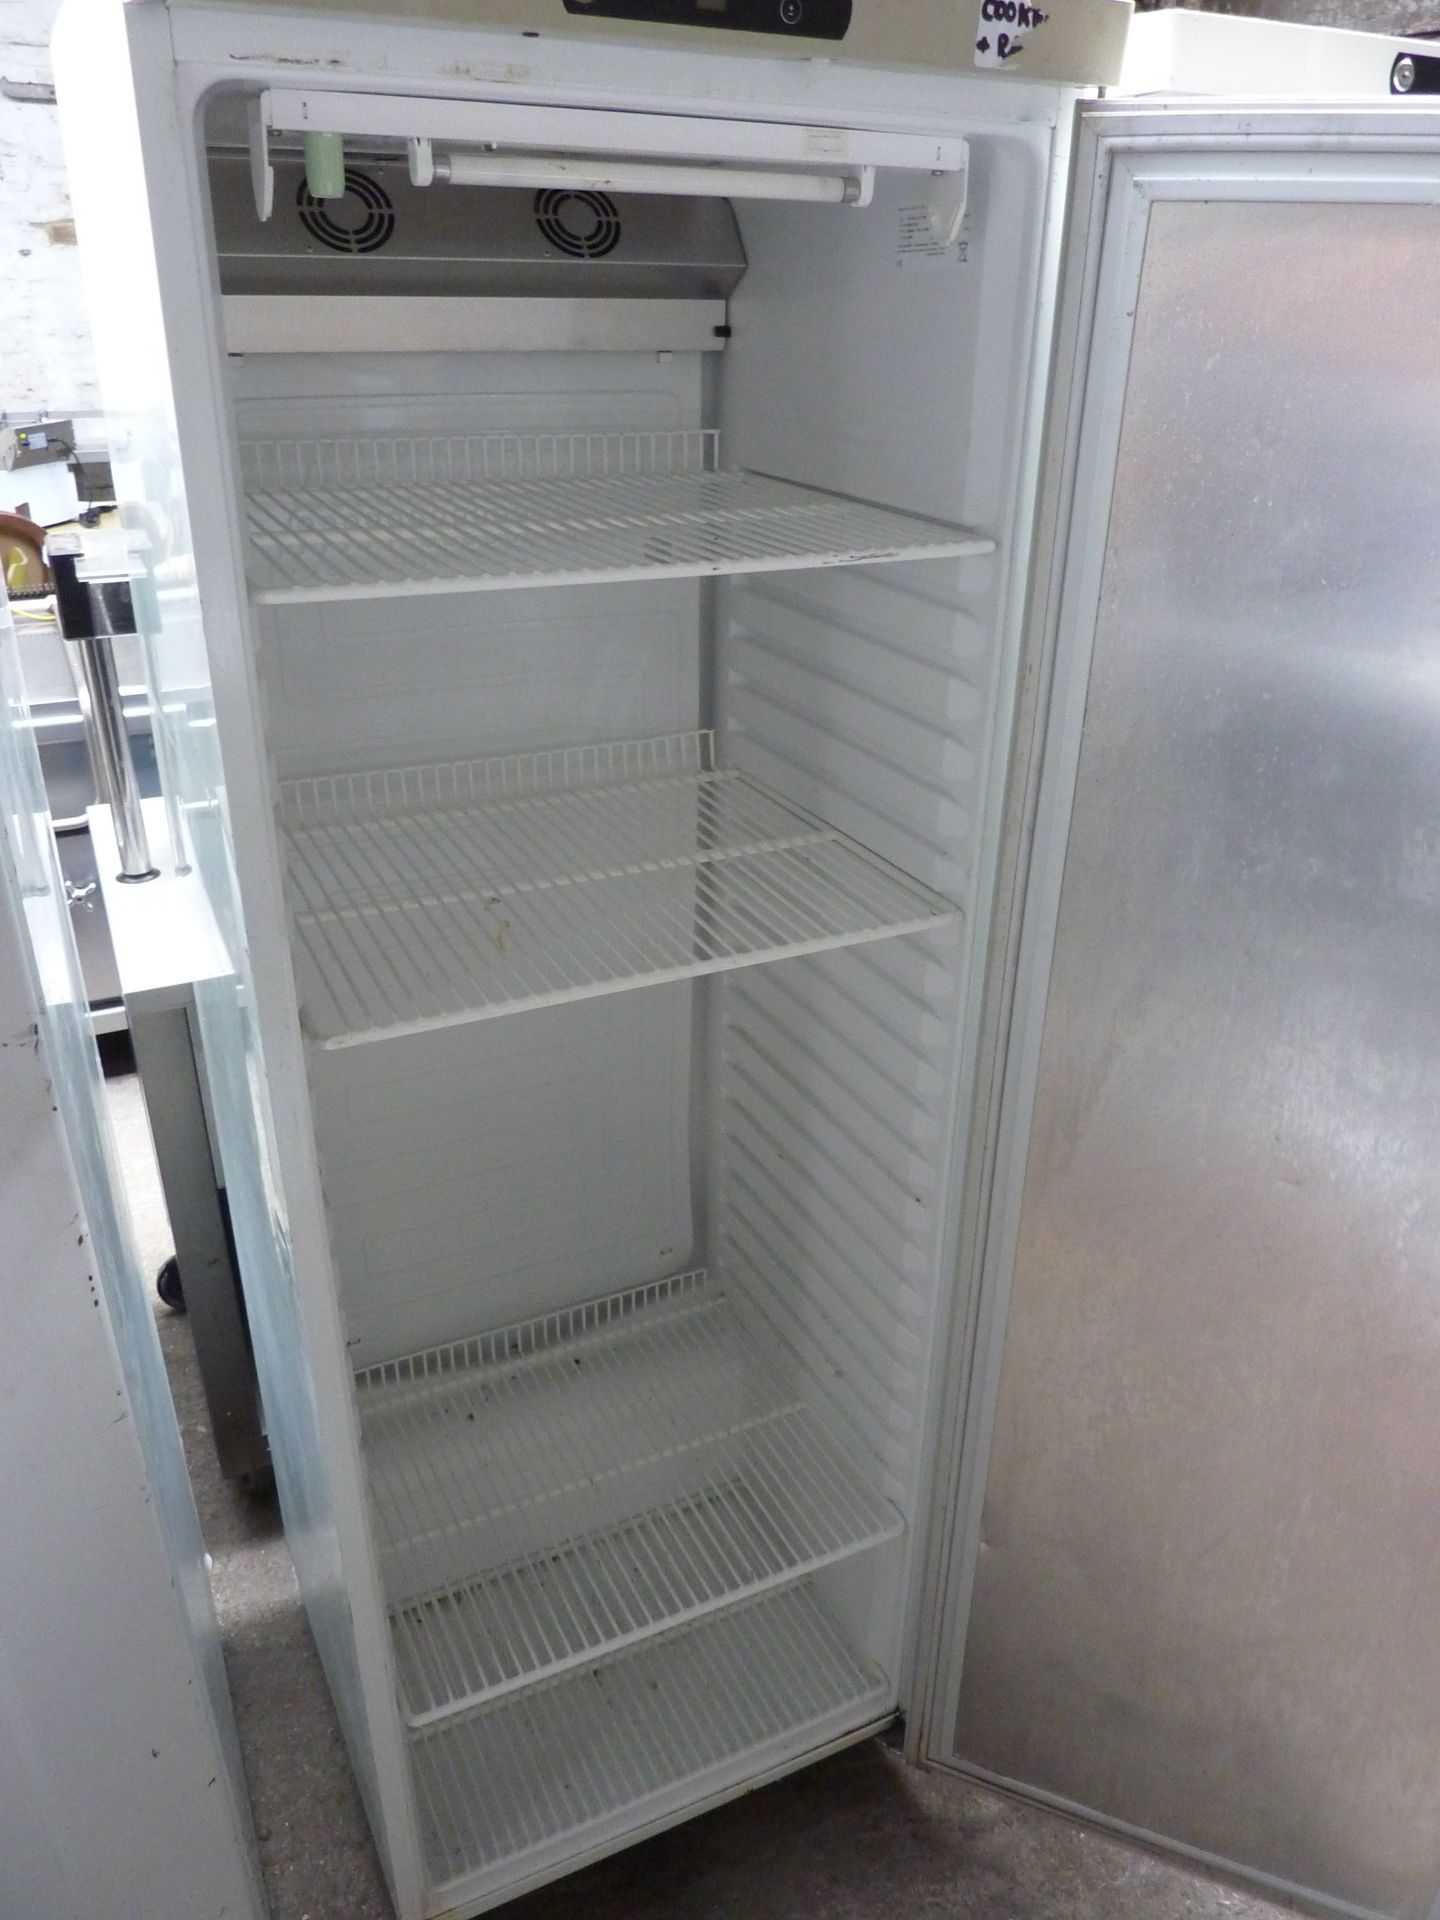 Gram single door upright fridge - Image 2 of 2